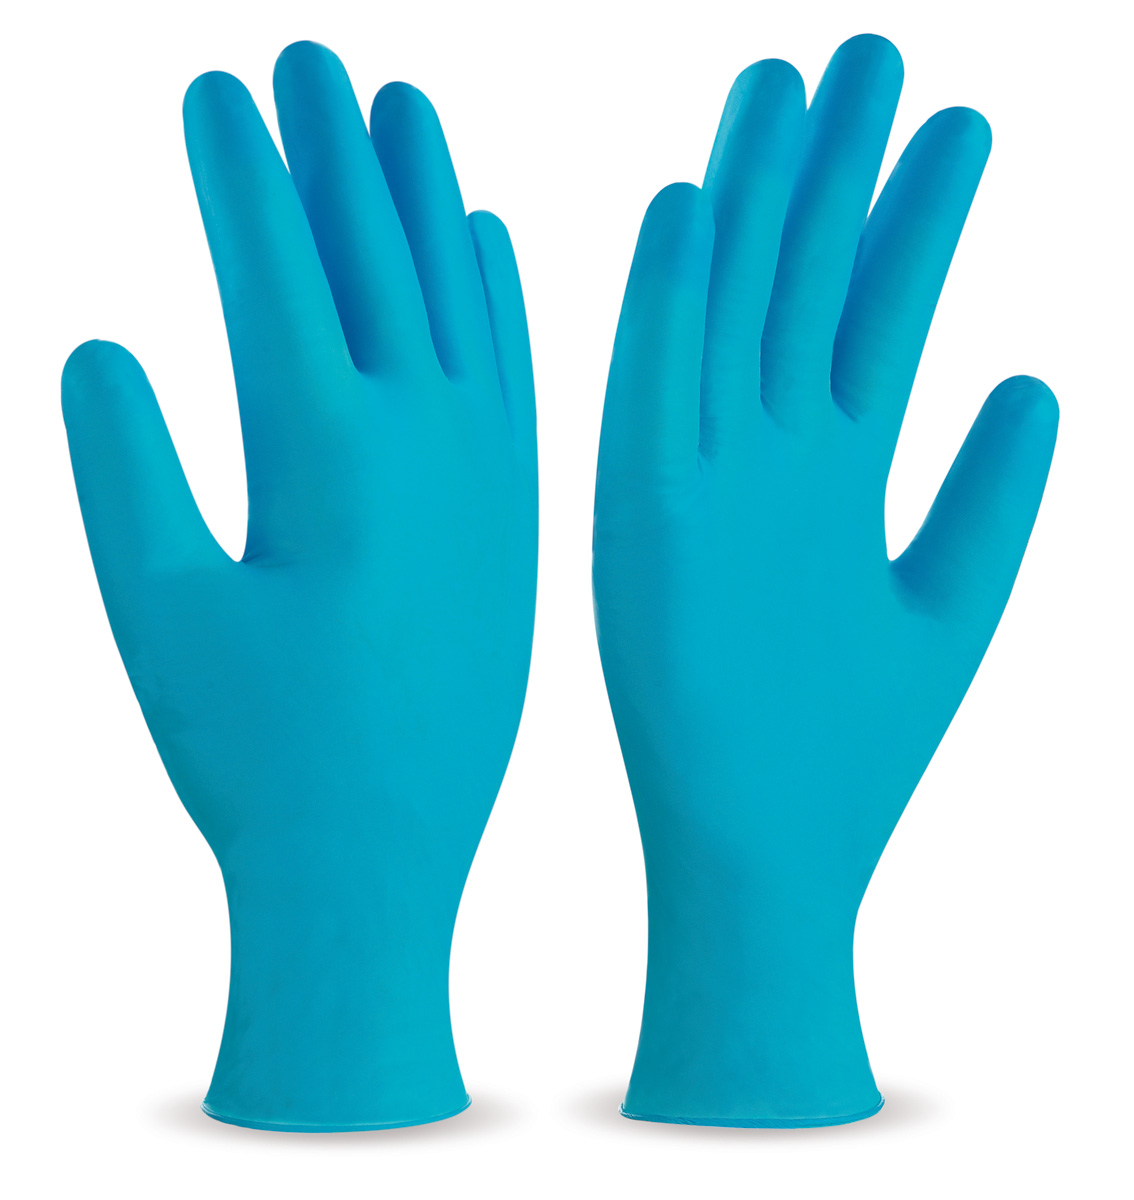 688-VAUT Work Gloves Disposables Blue vinyl glove.